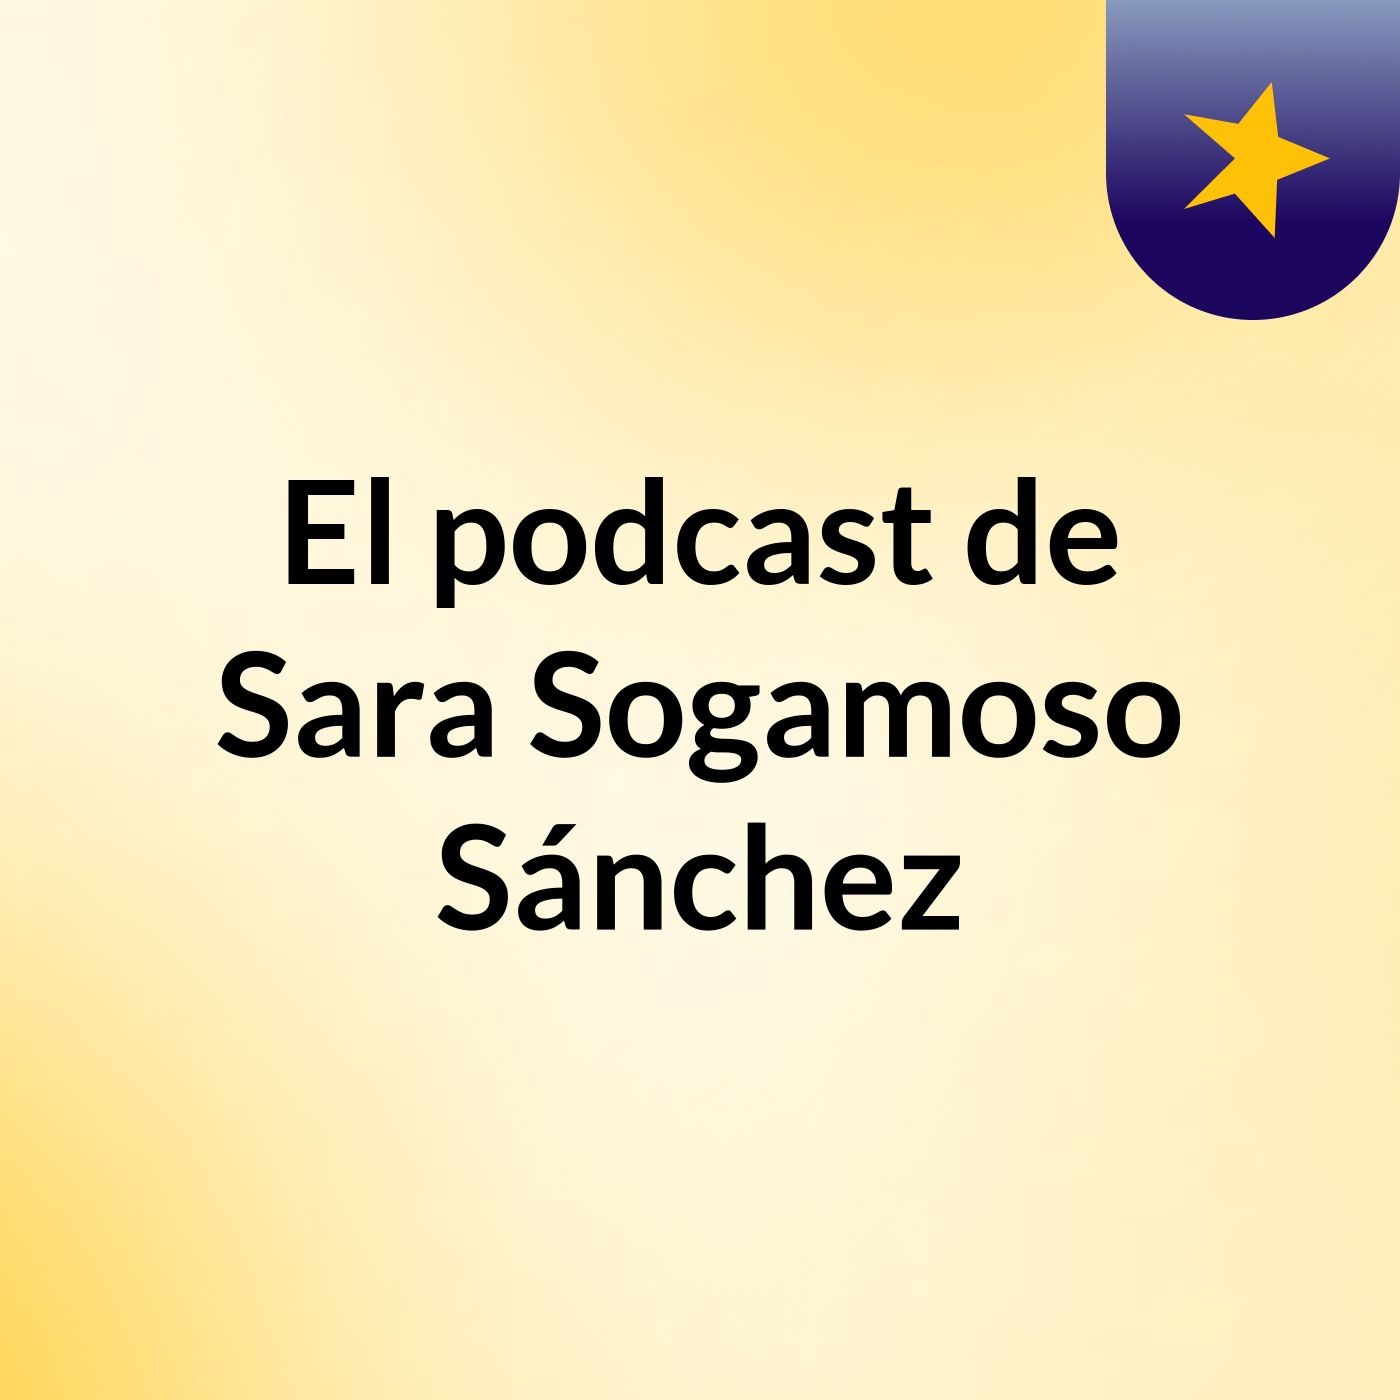 Episodio 1 - El podcast de Sara Sogamoso Sánchez